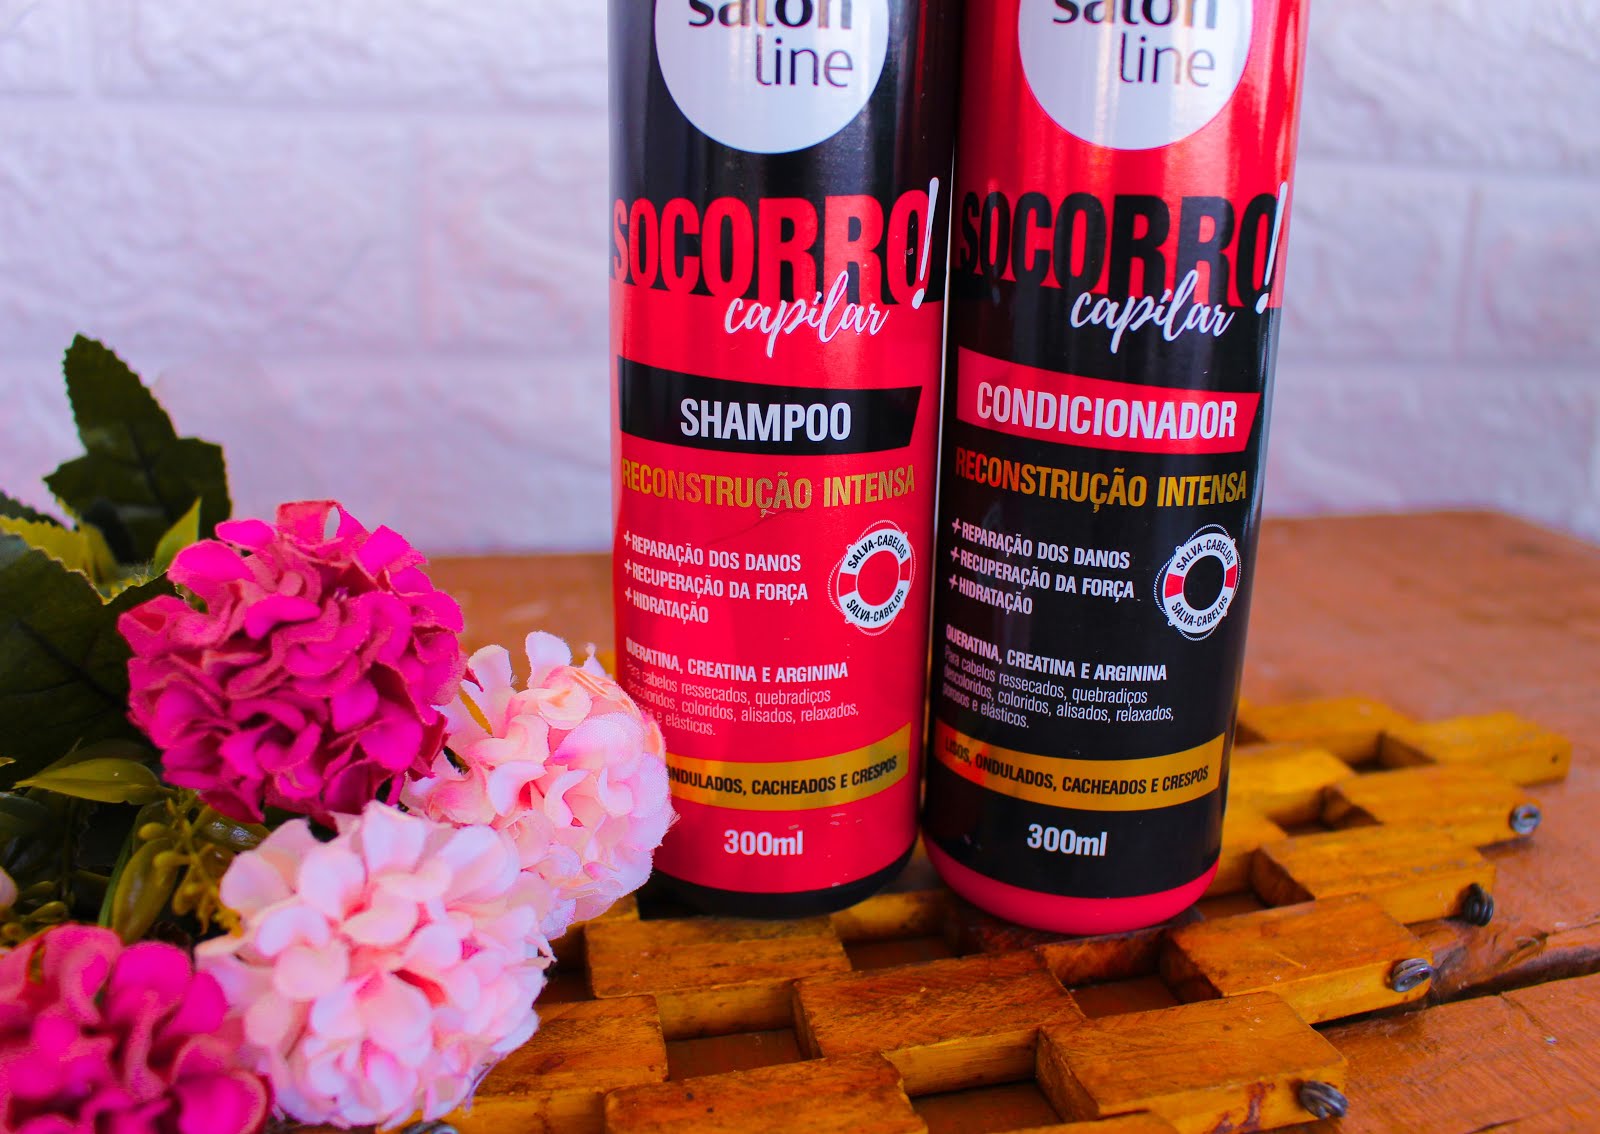 Resenha: Shampoo e Condicionador Socorro Capilar da Salon Line